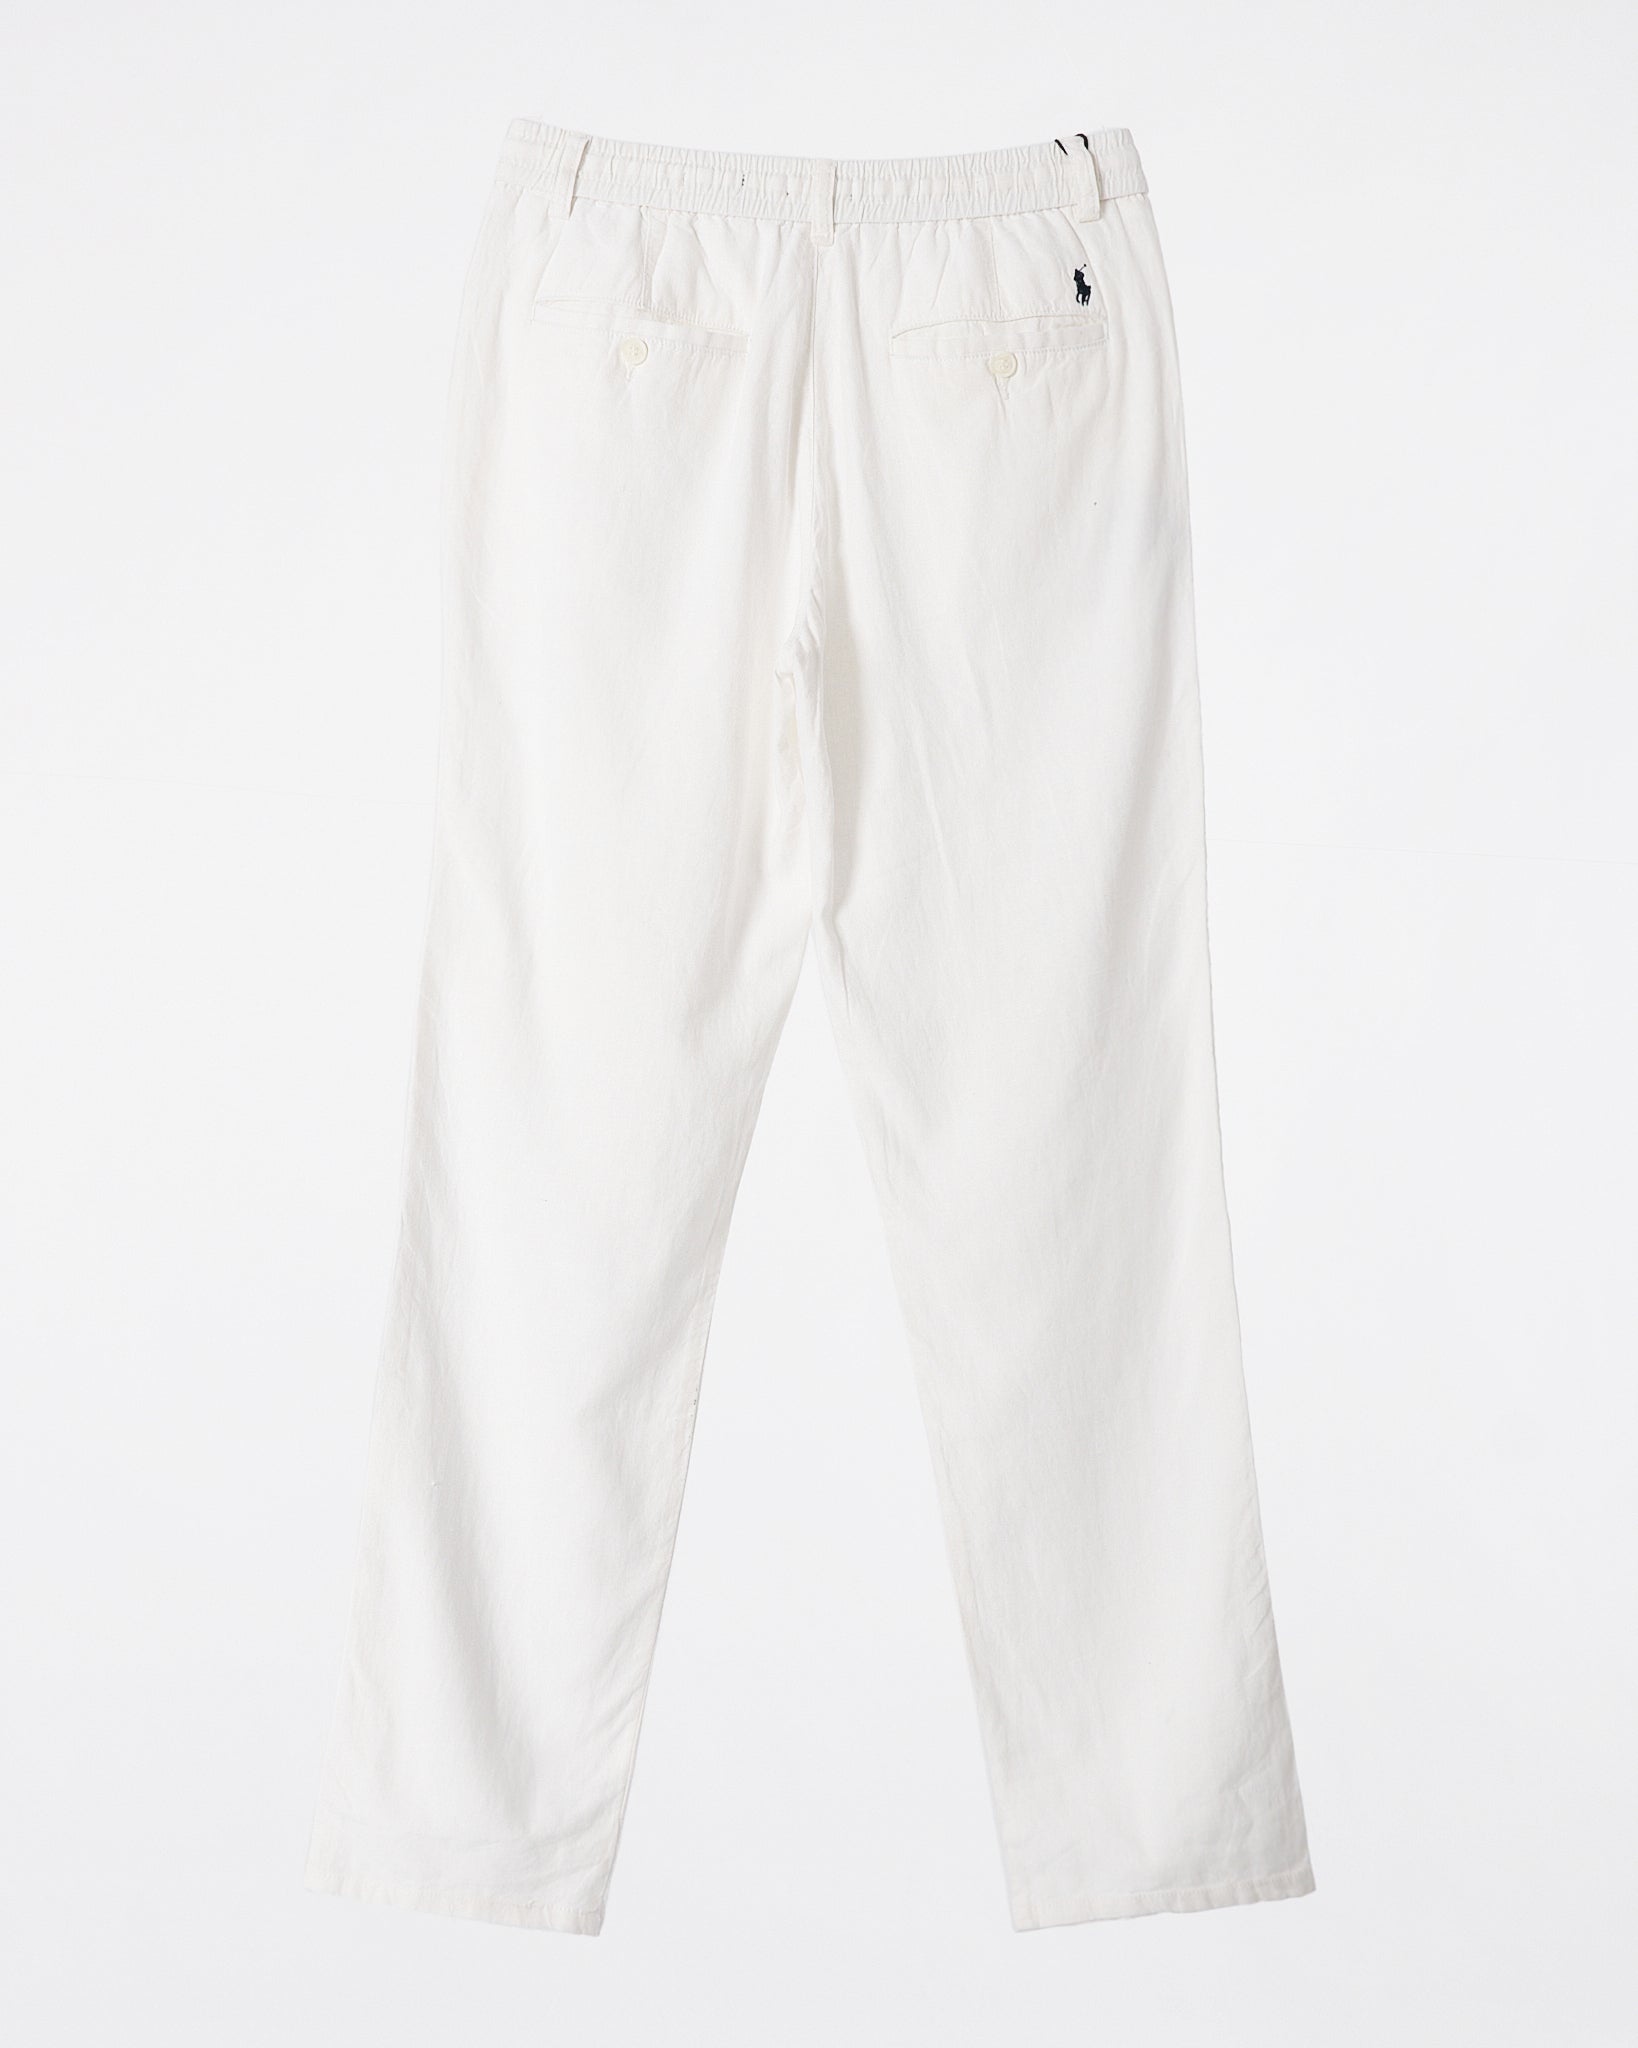 RL Cotton Regular Fit Men White Pants 24.90